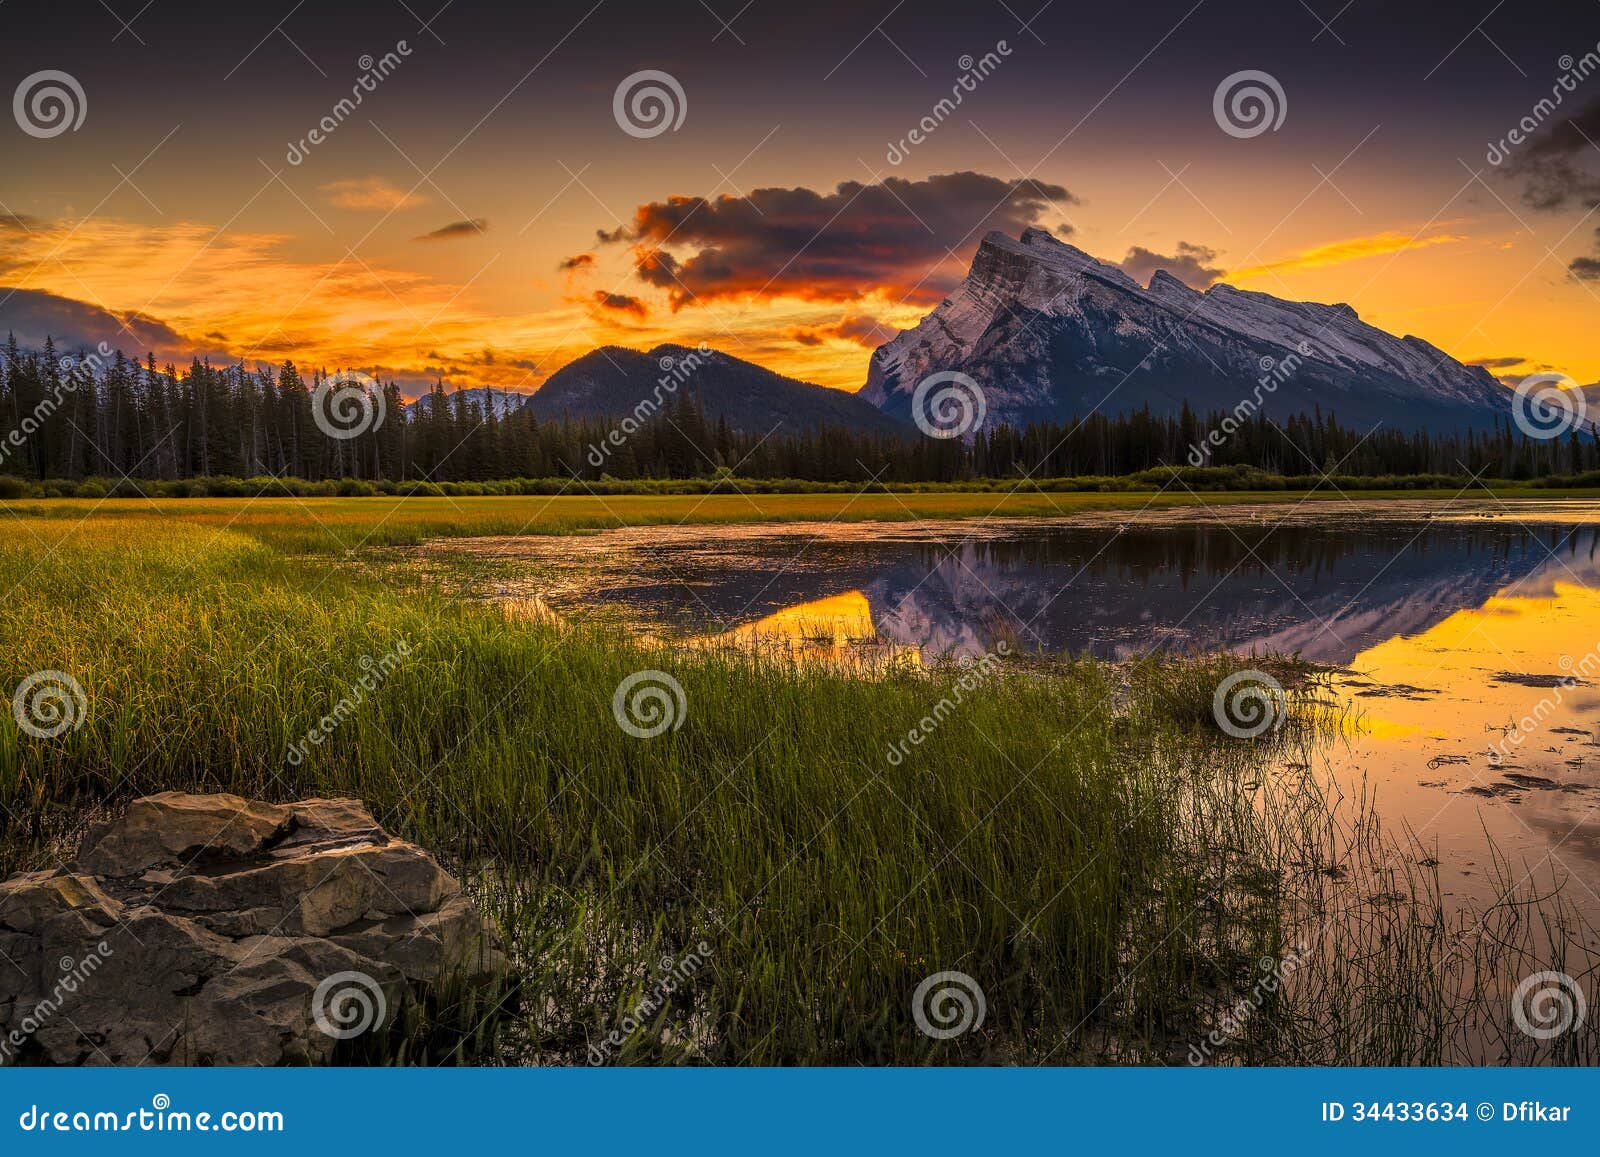 vermilion lakes sunrise near banff